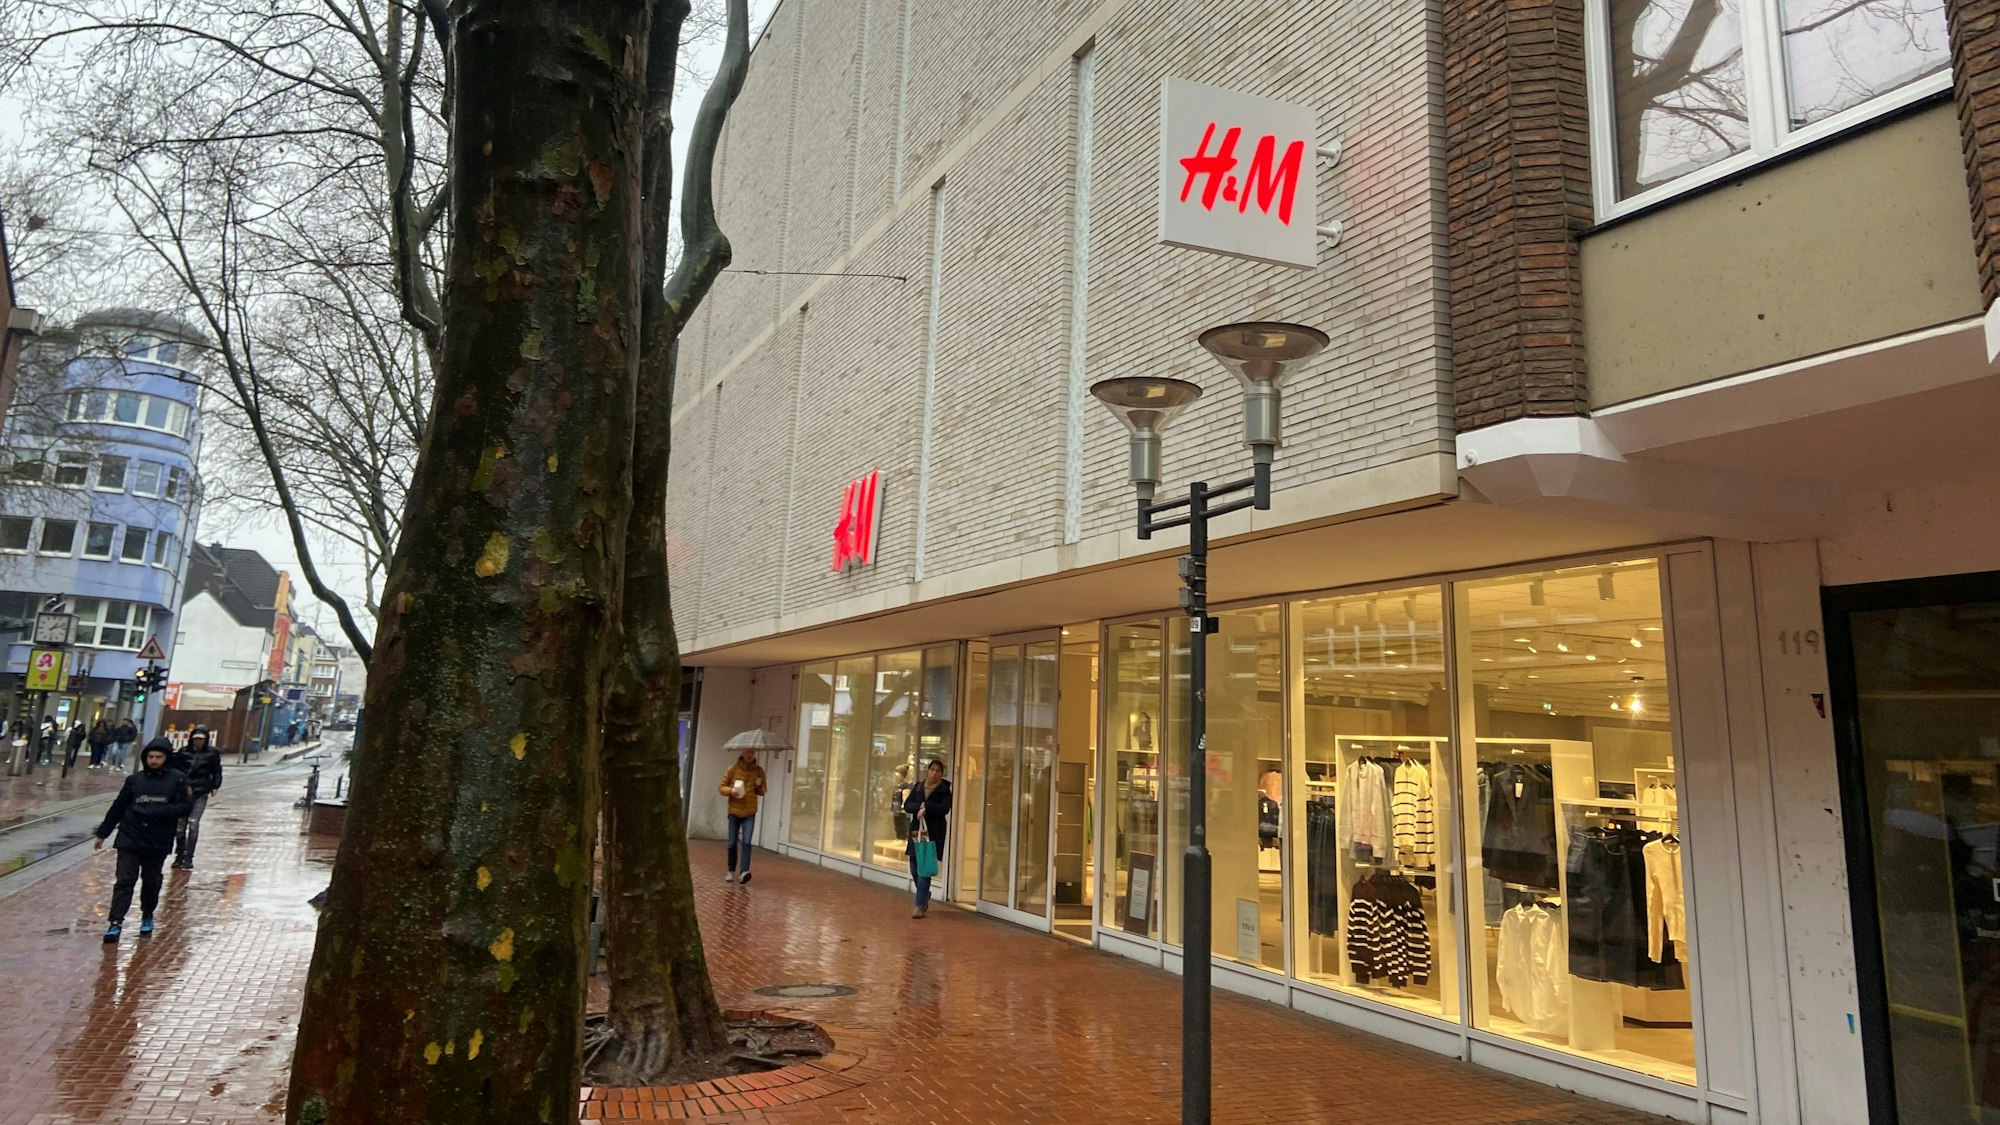 Auf dem Bild ist die H&M Filiale in Frechen zu sehen.